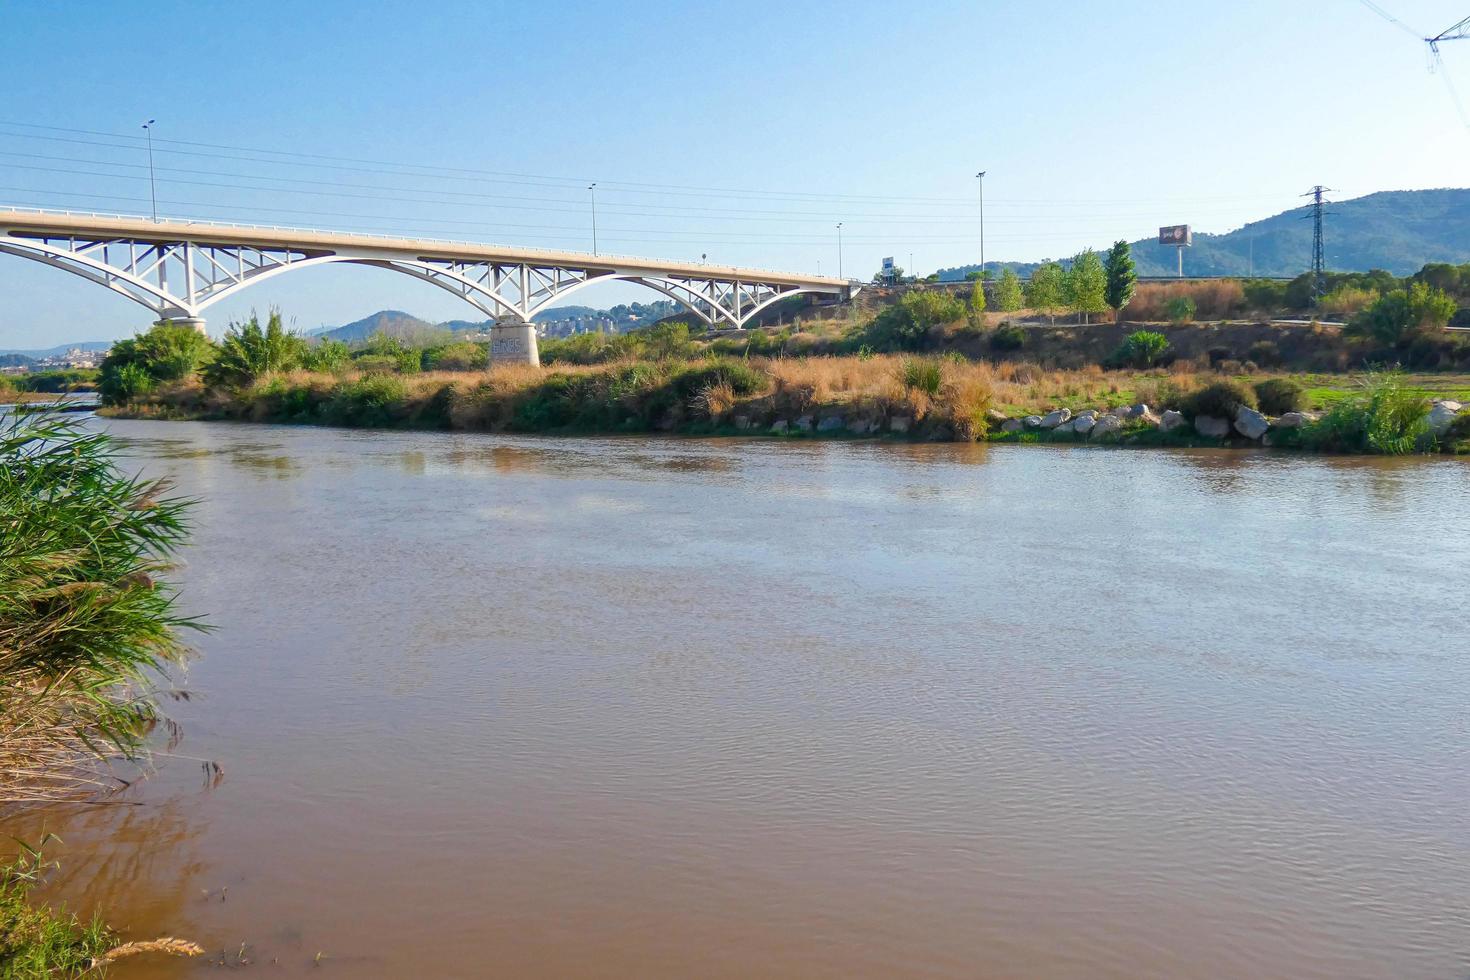 llobregat rivier- en de brug dat kruisen de rivier- Bij sant feliu de llobregat foto